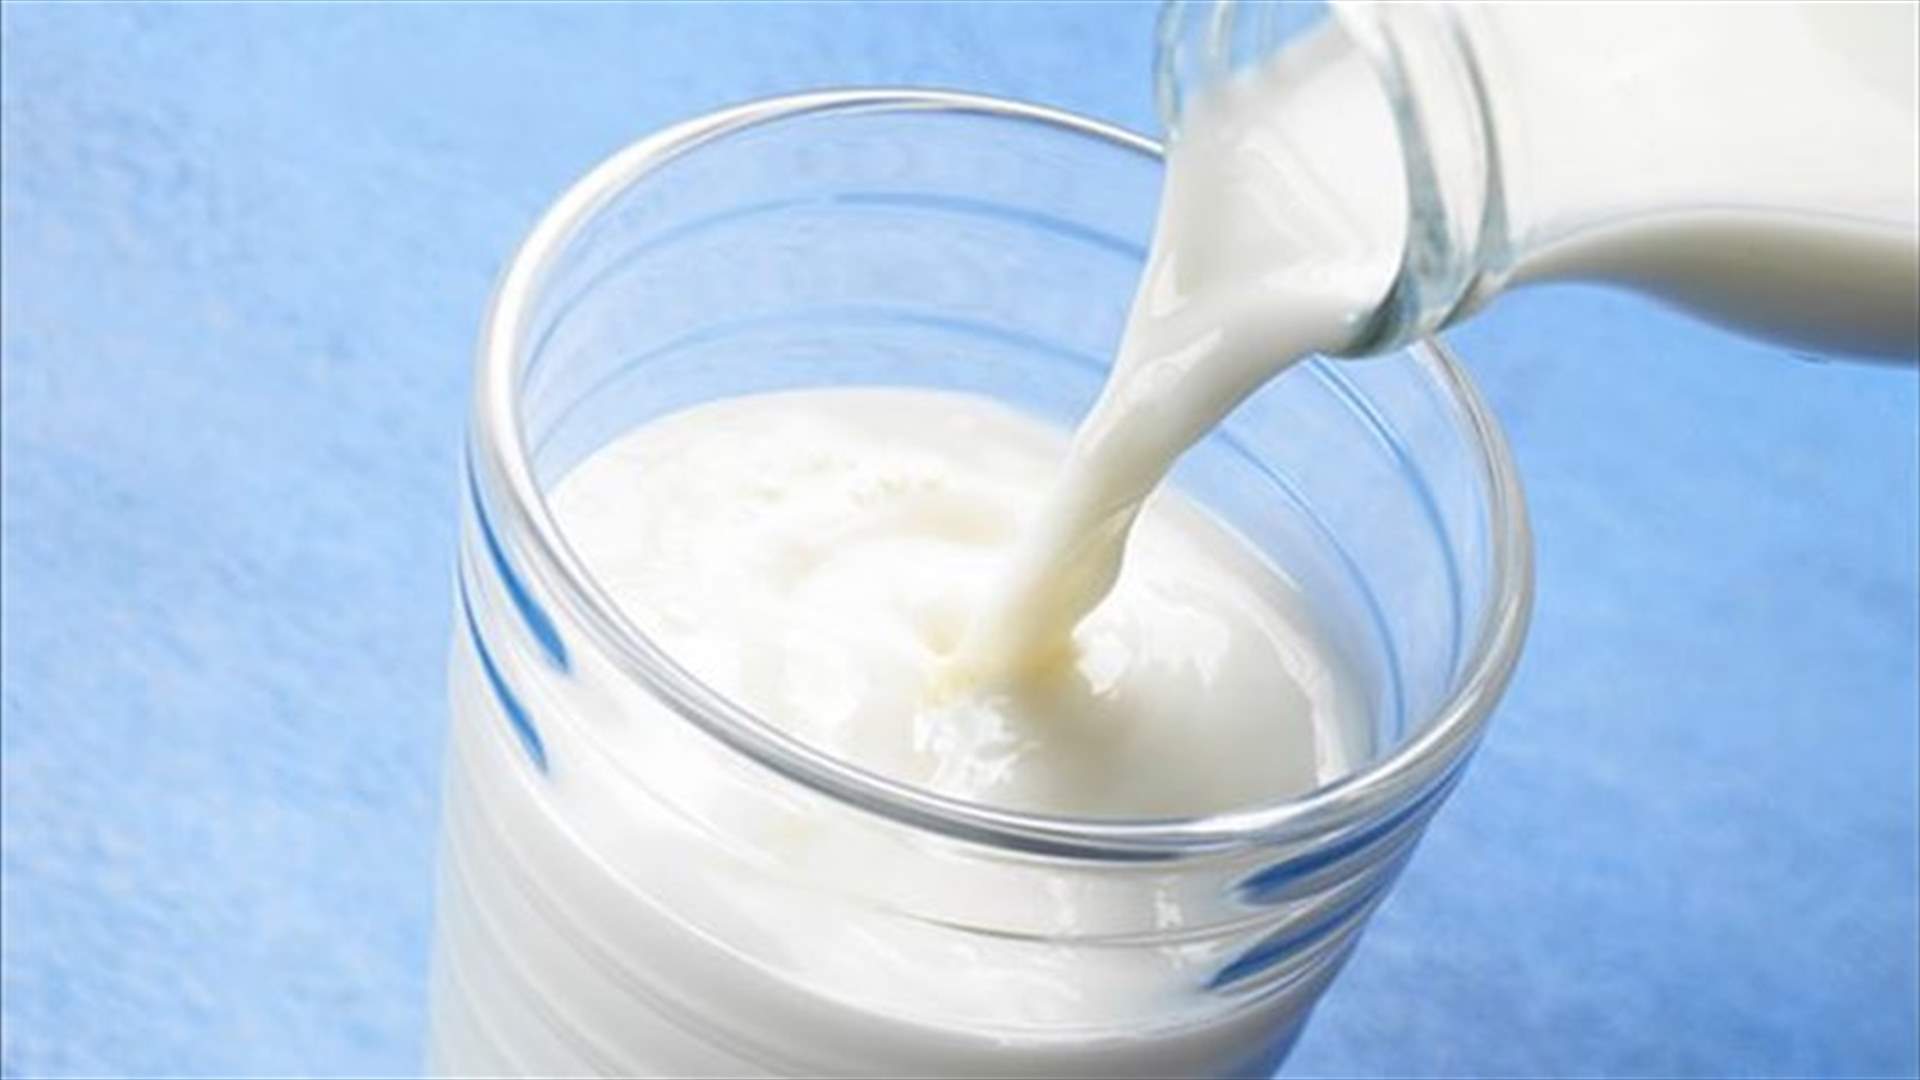 دراسة صادمة: 3 أكواب من الحليب يومياً مرتبطة بالموت المبكر